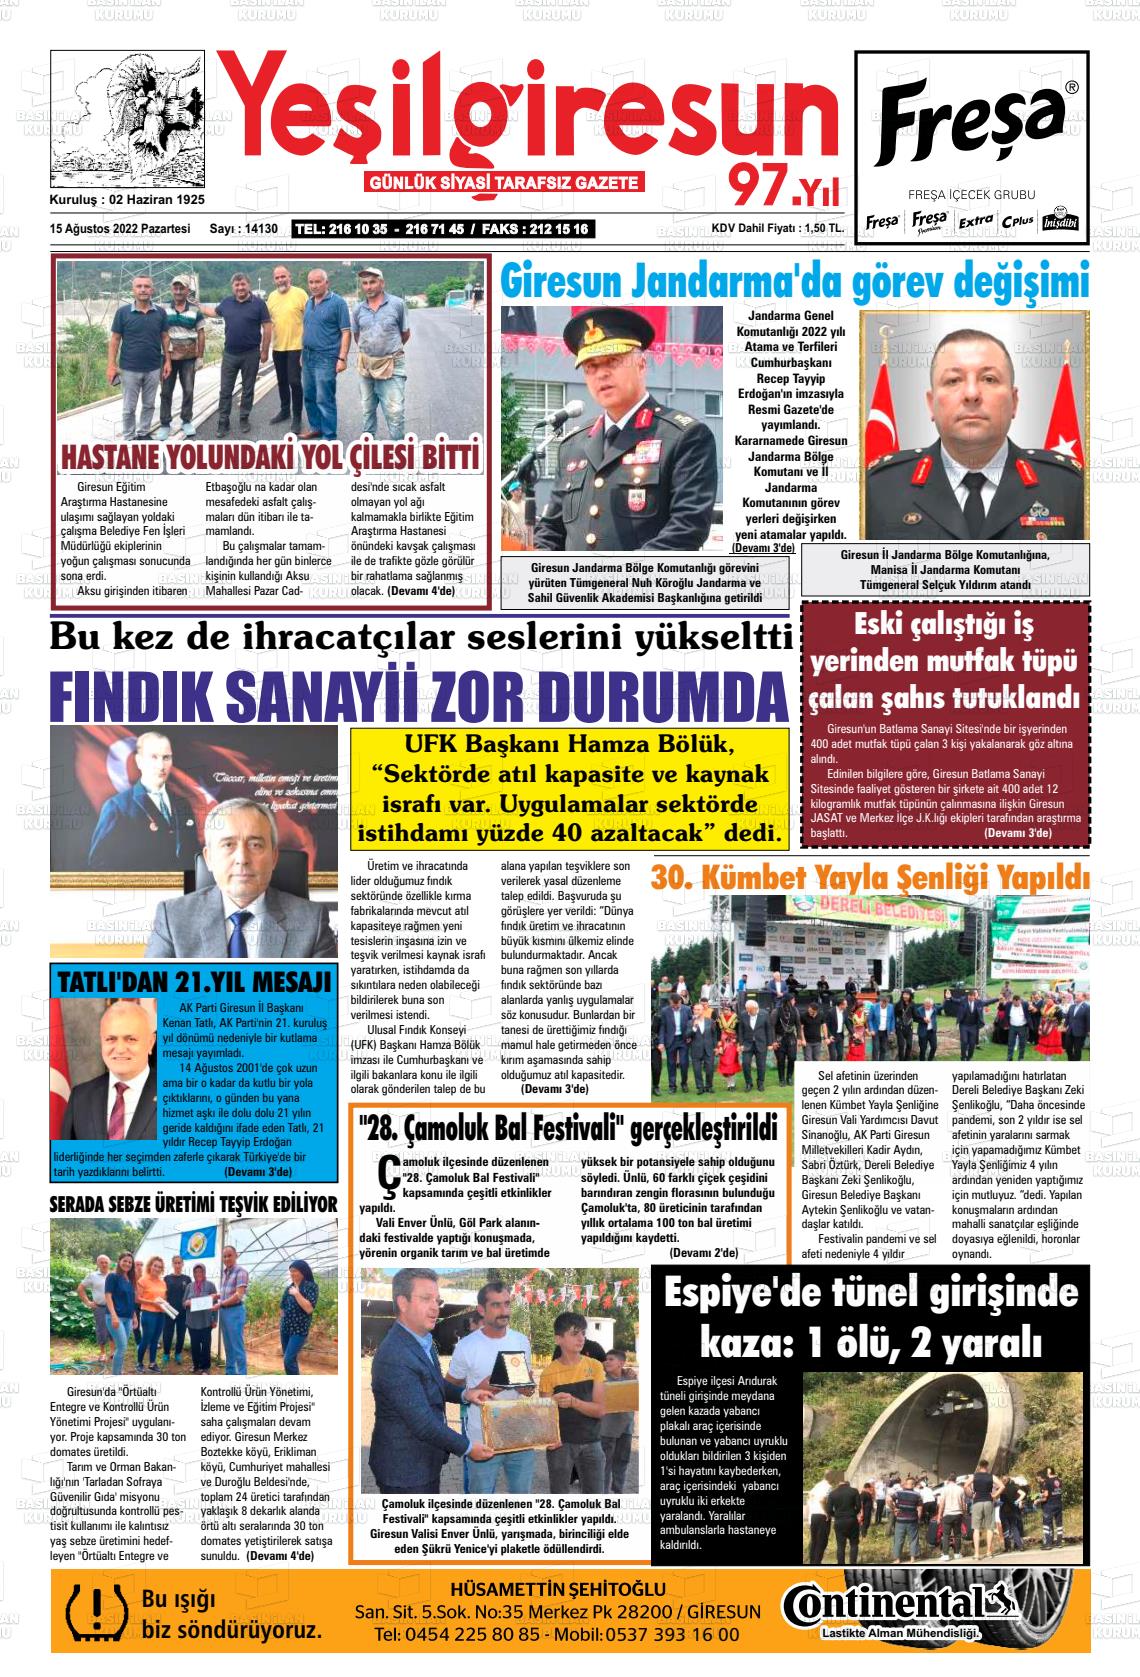 15 Ağustos 2022 Yeşil Giresun Gazete Manşeti